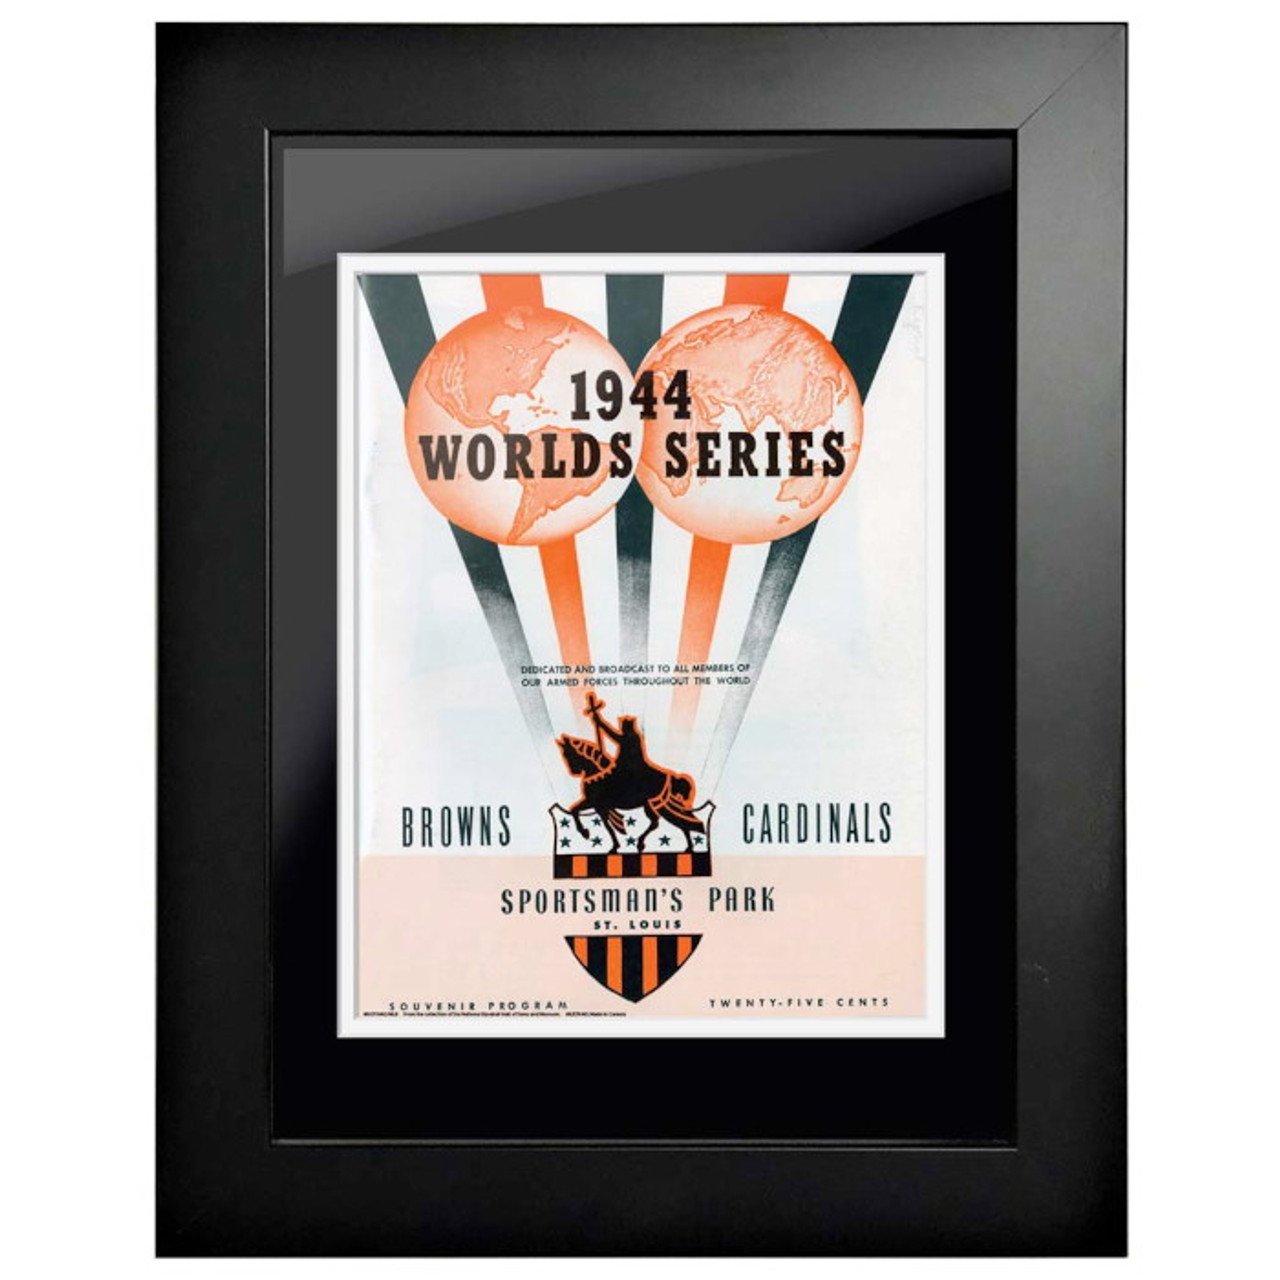 1944 World Series Program Cover 18 x 14 Framed Print